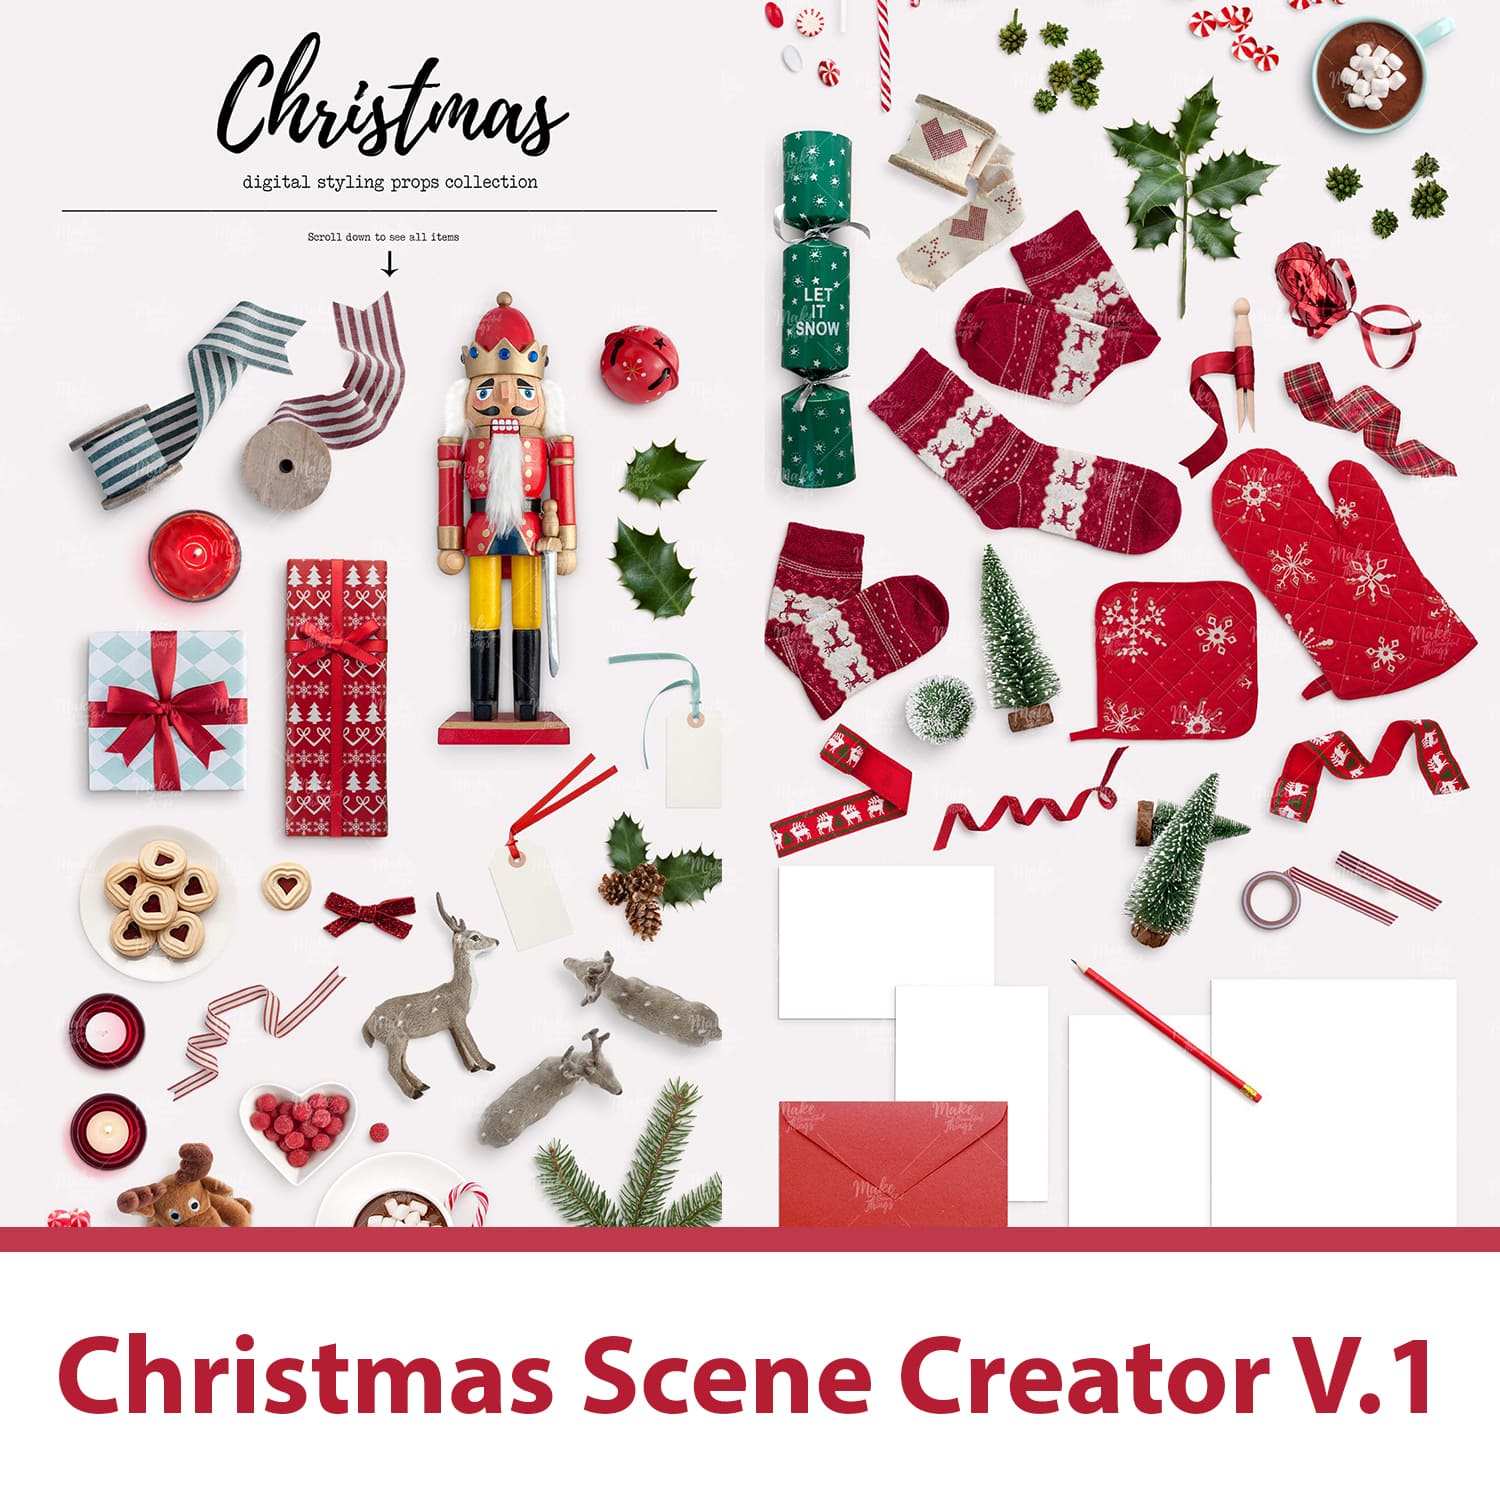 Christmas Scene Creator V.1 main cover.